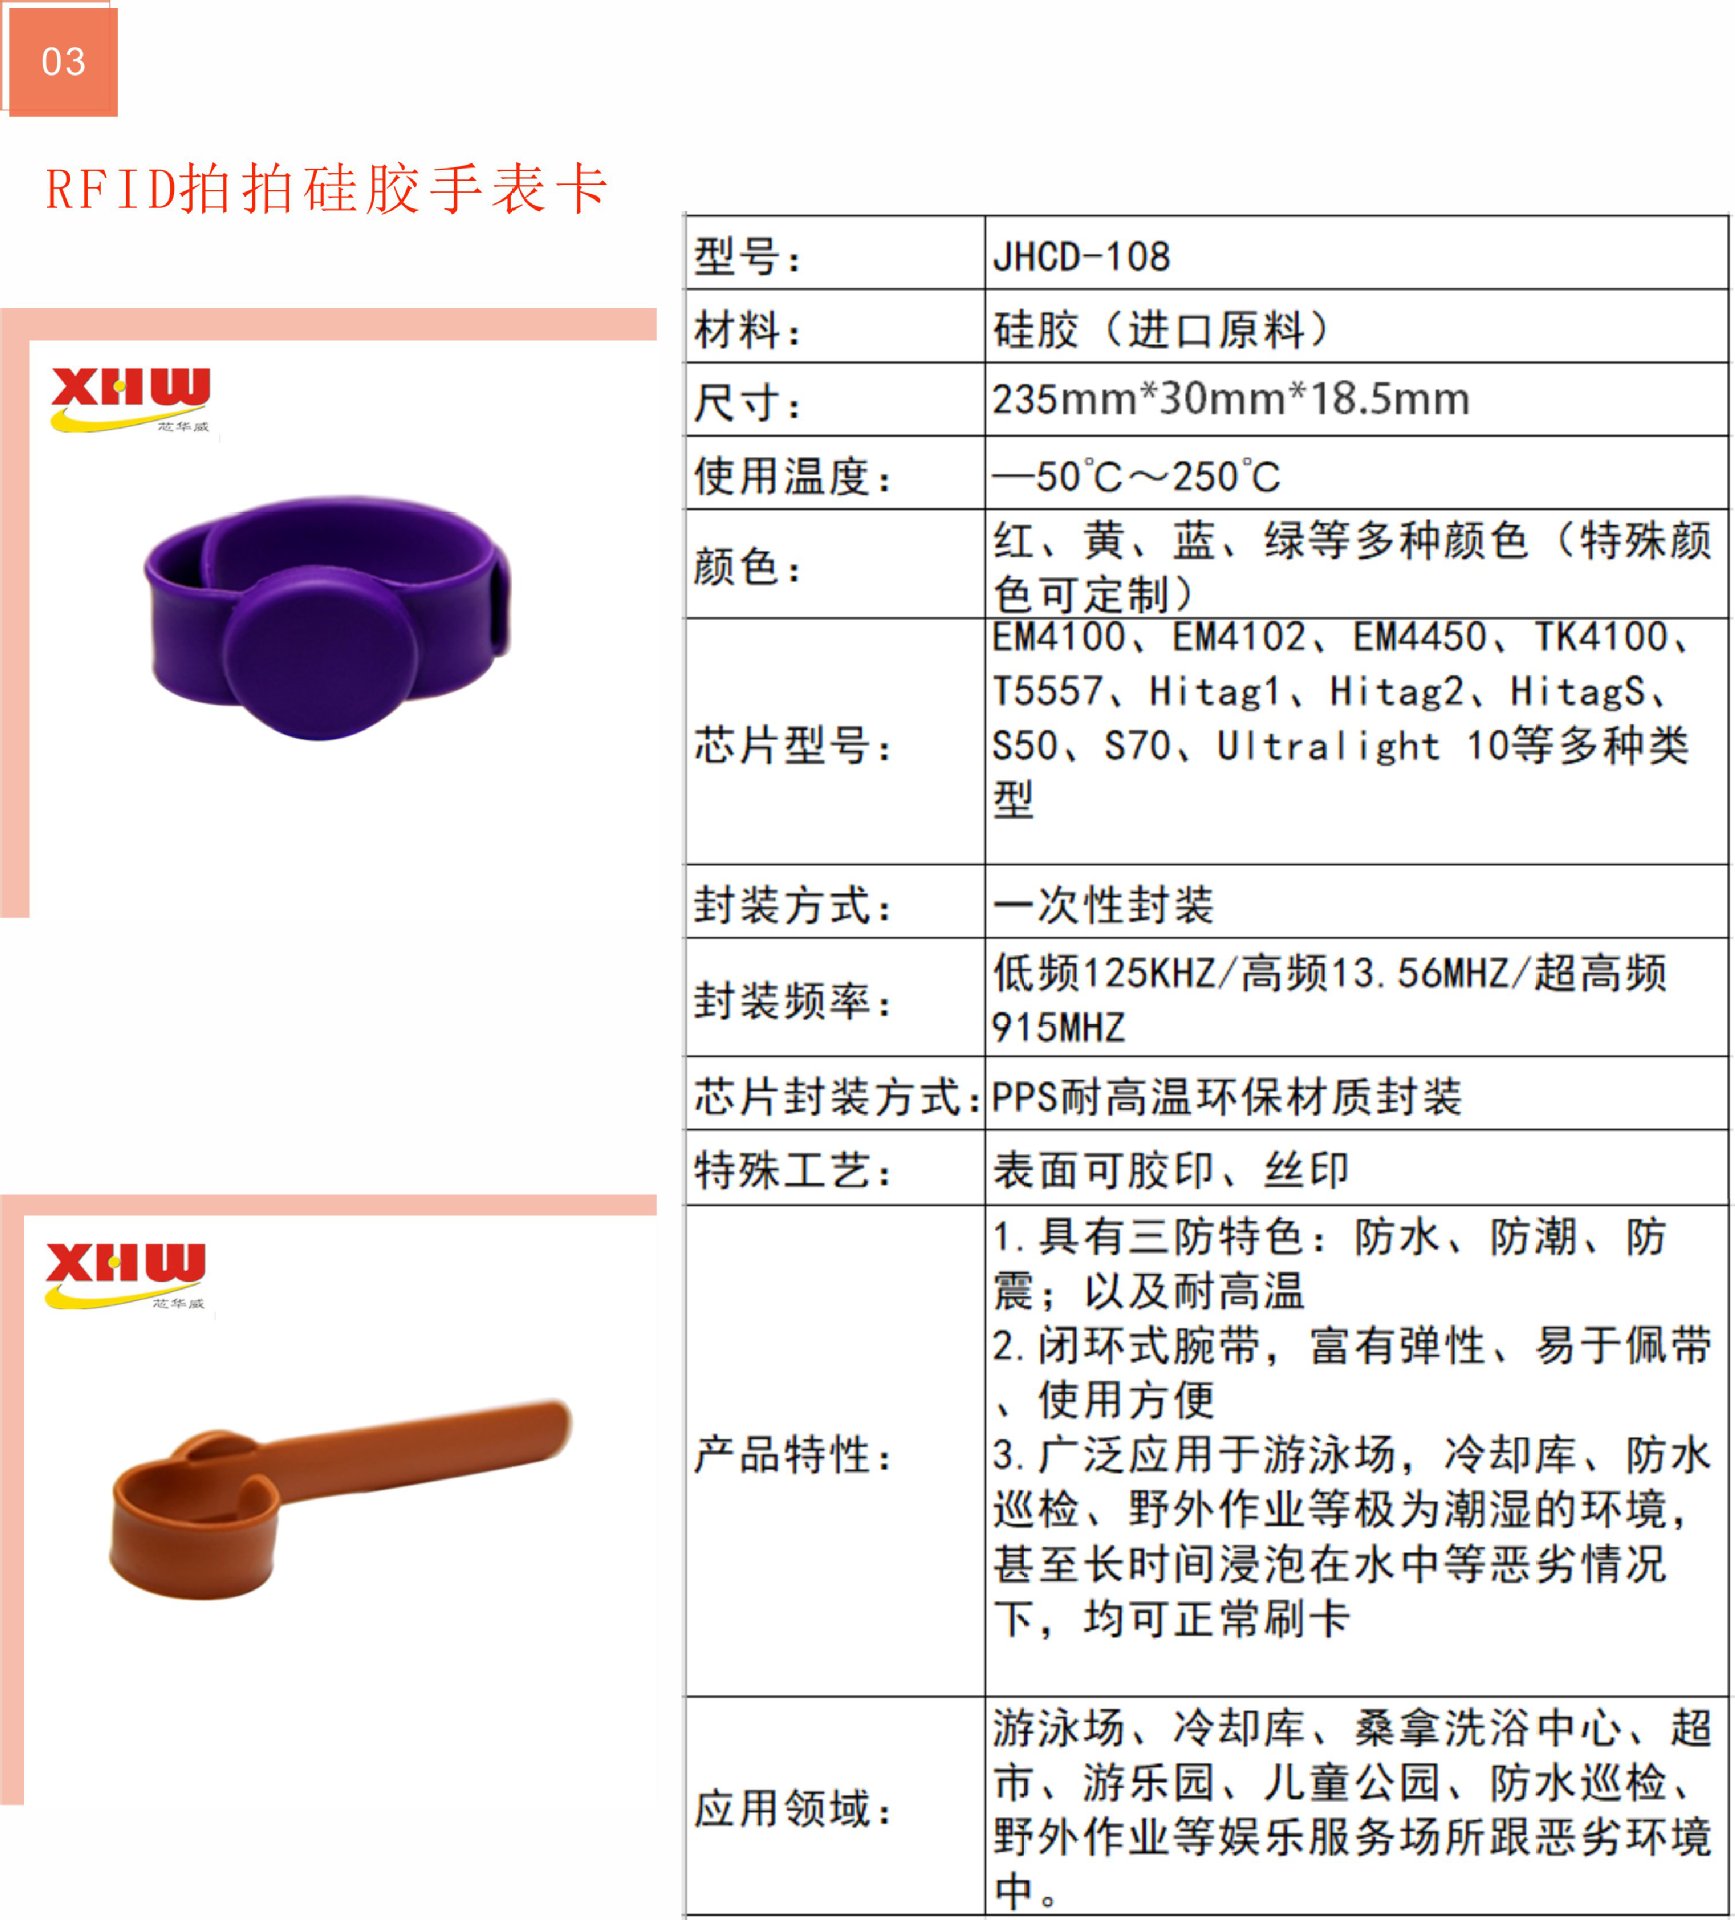 JHCD-109 RFID双头硅胶腕带（A款）